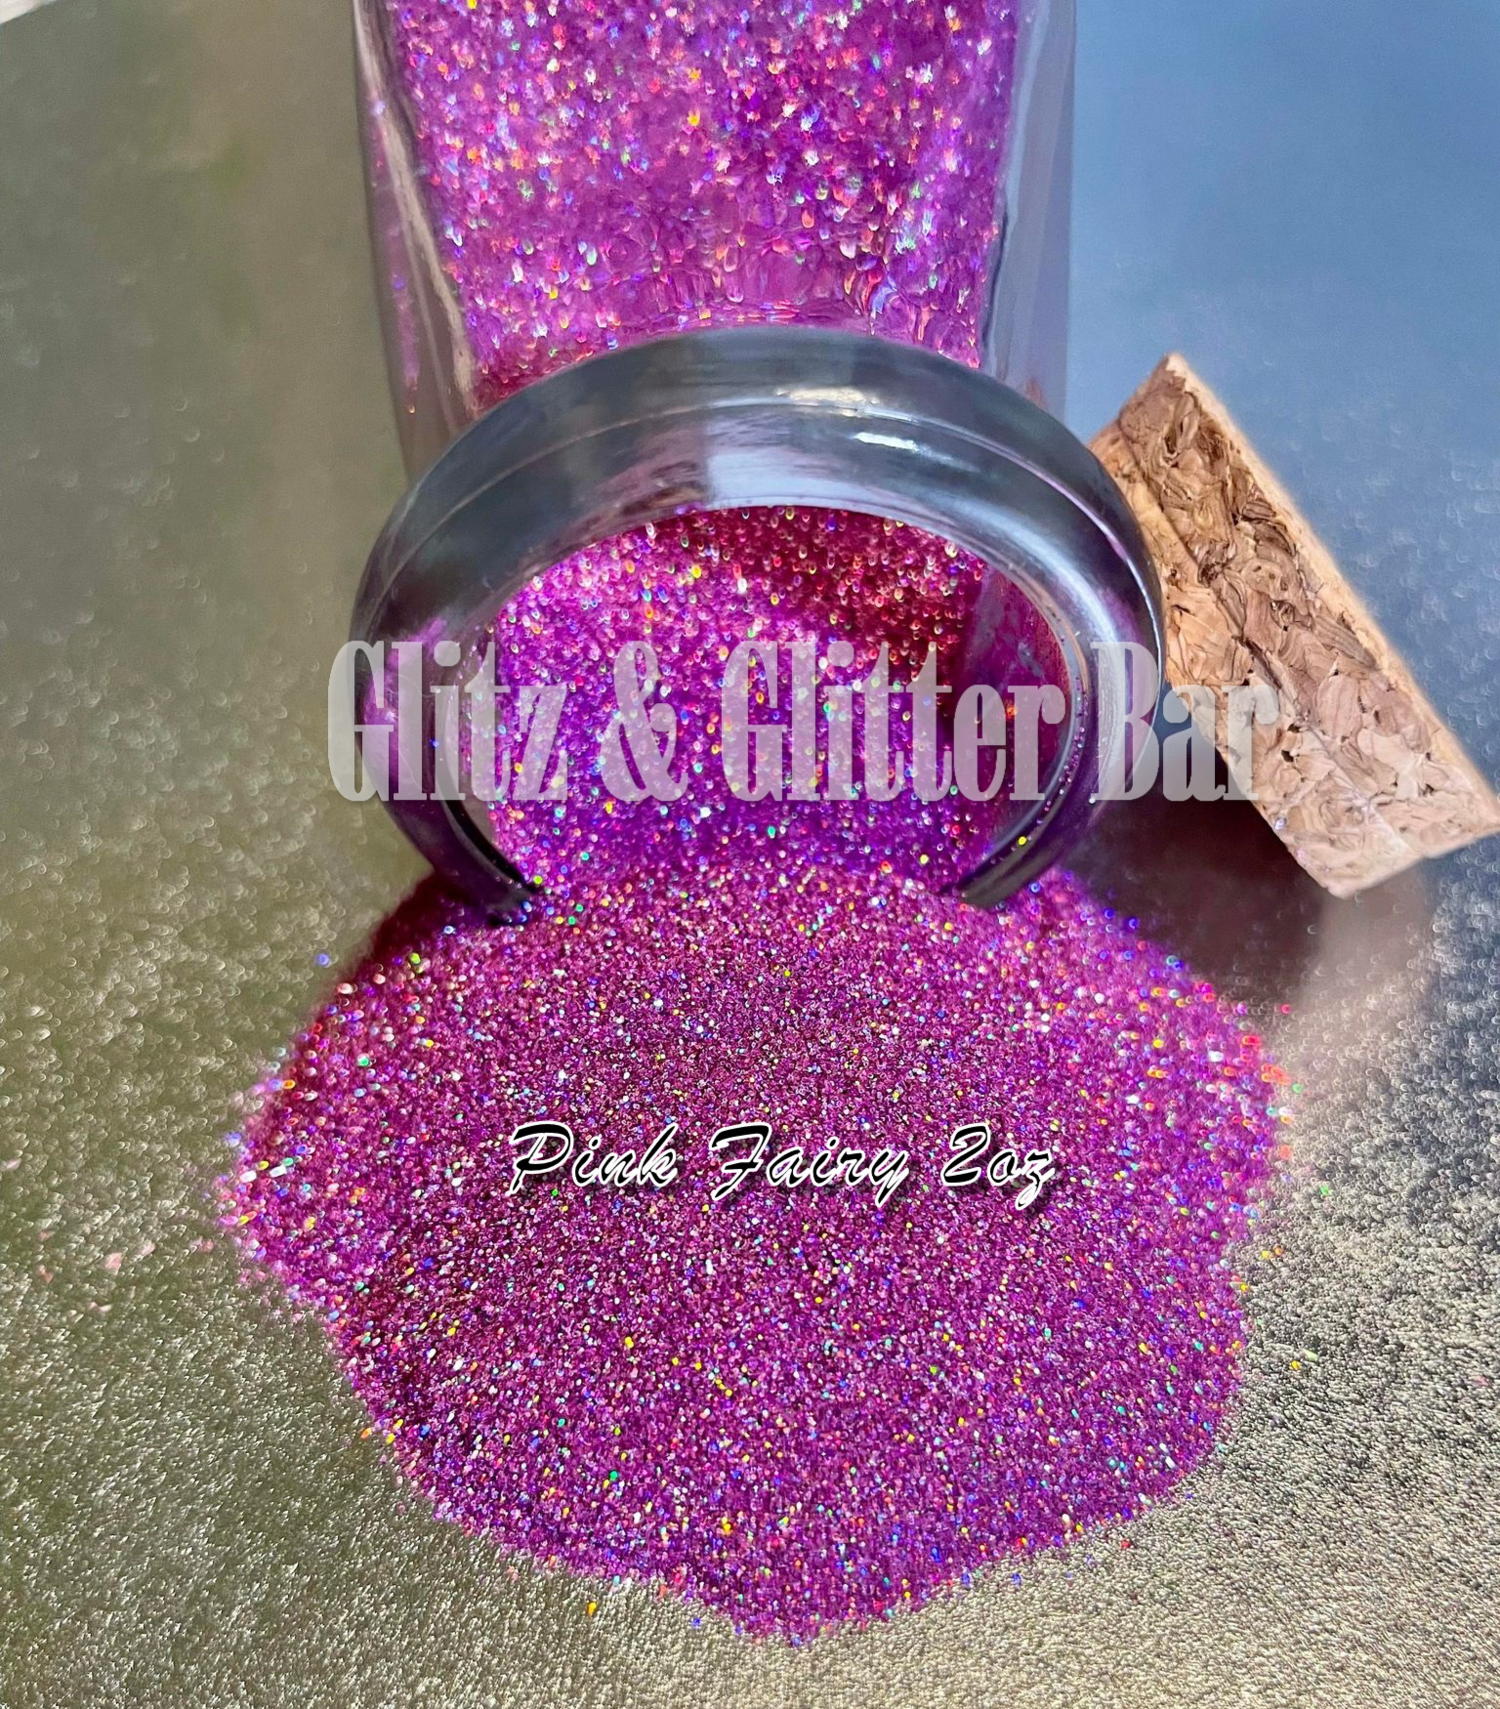 Glitz & Glitter Bar we specialize in custom glitter mixes.